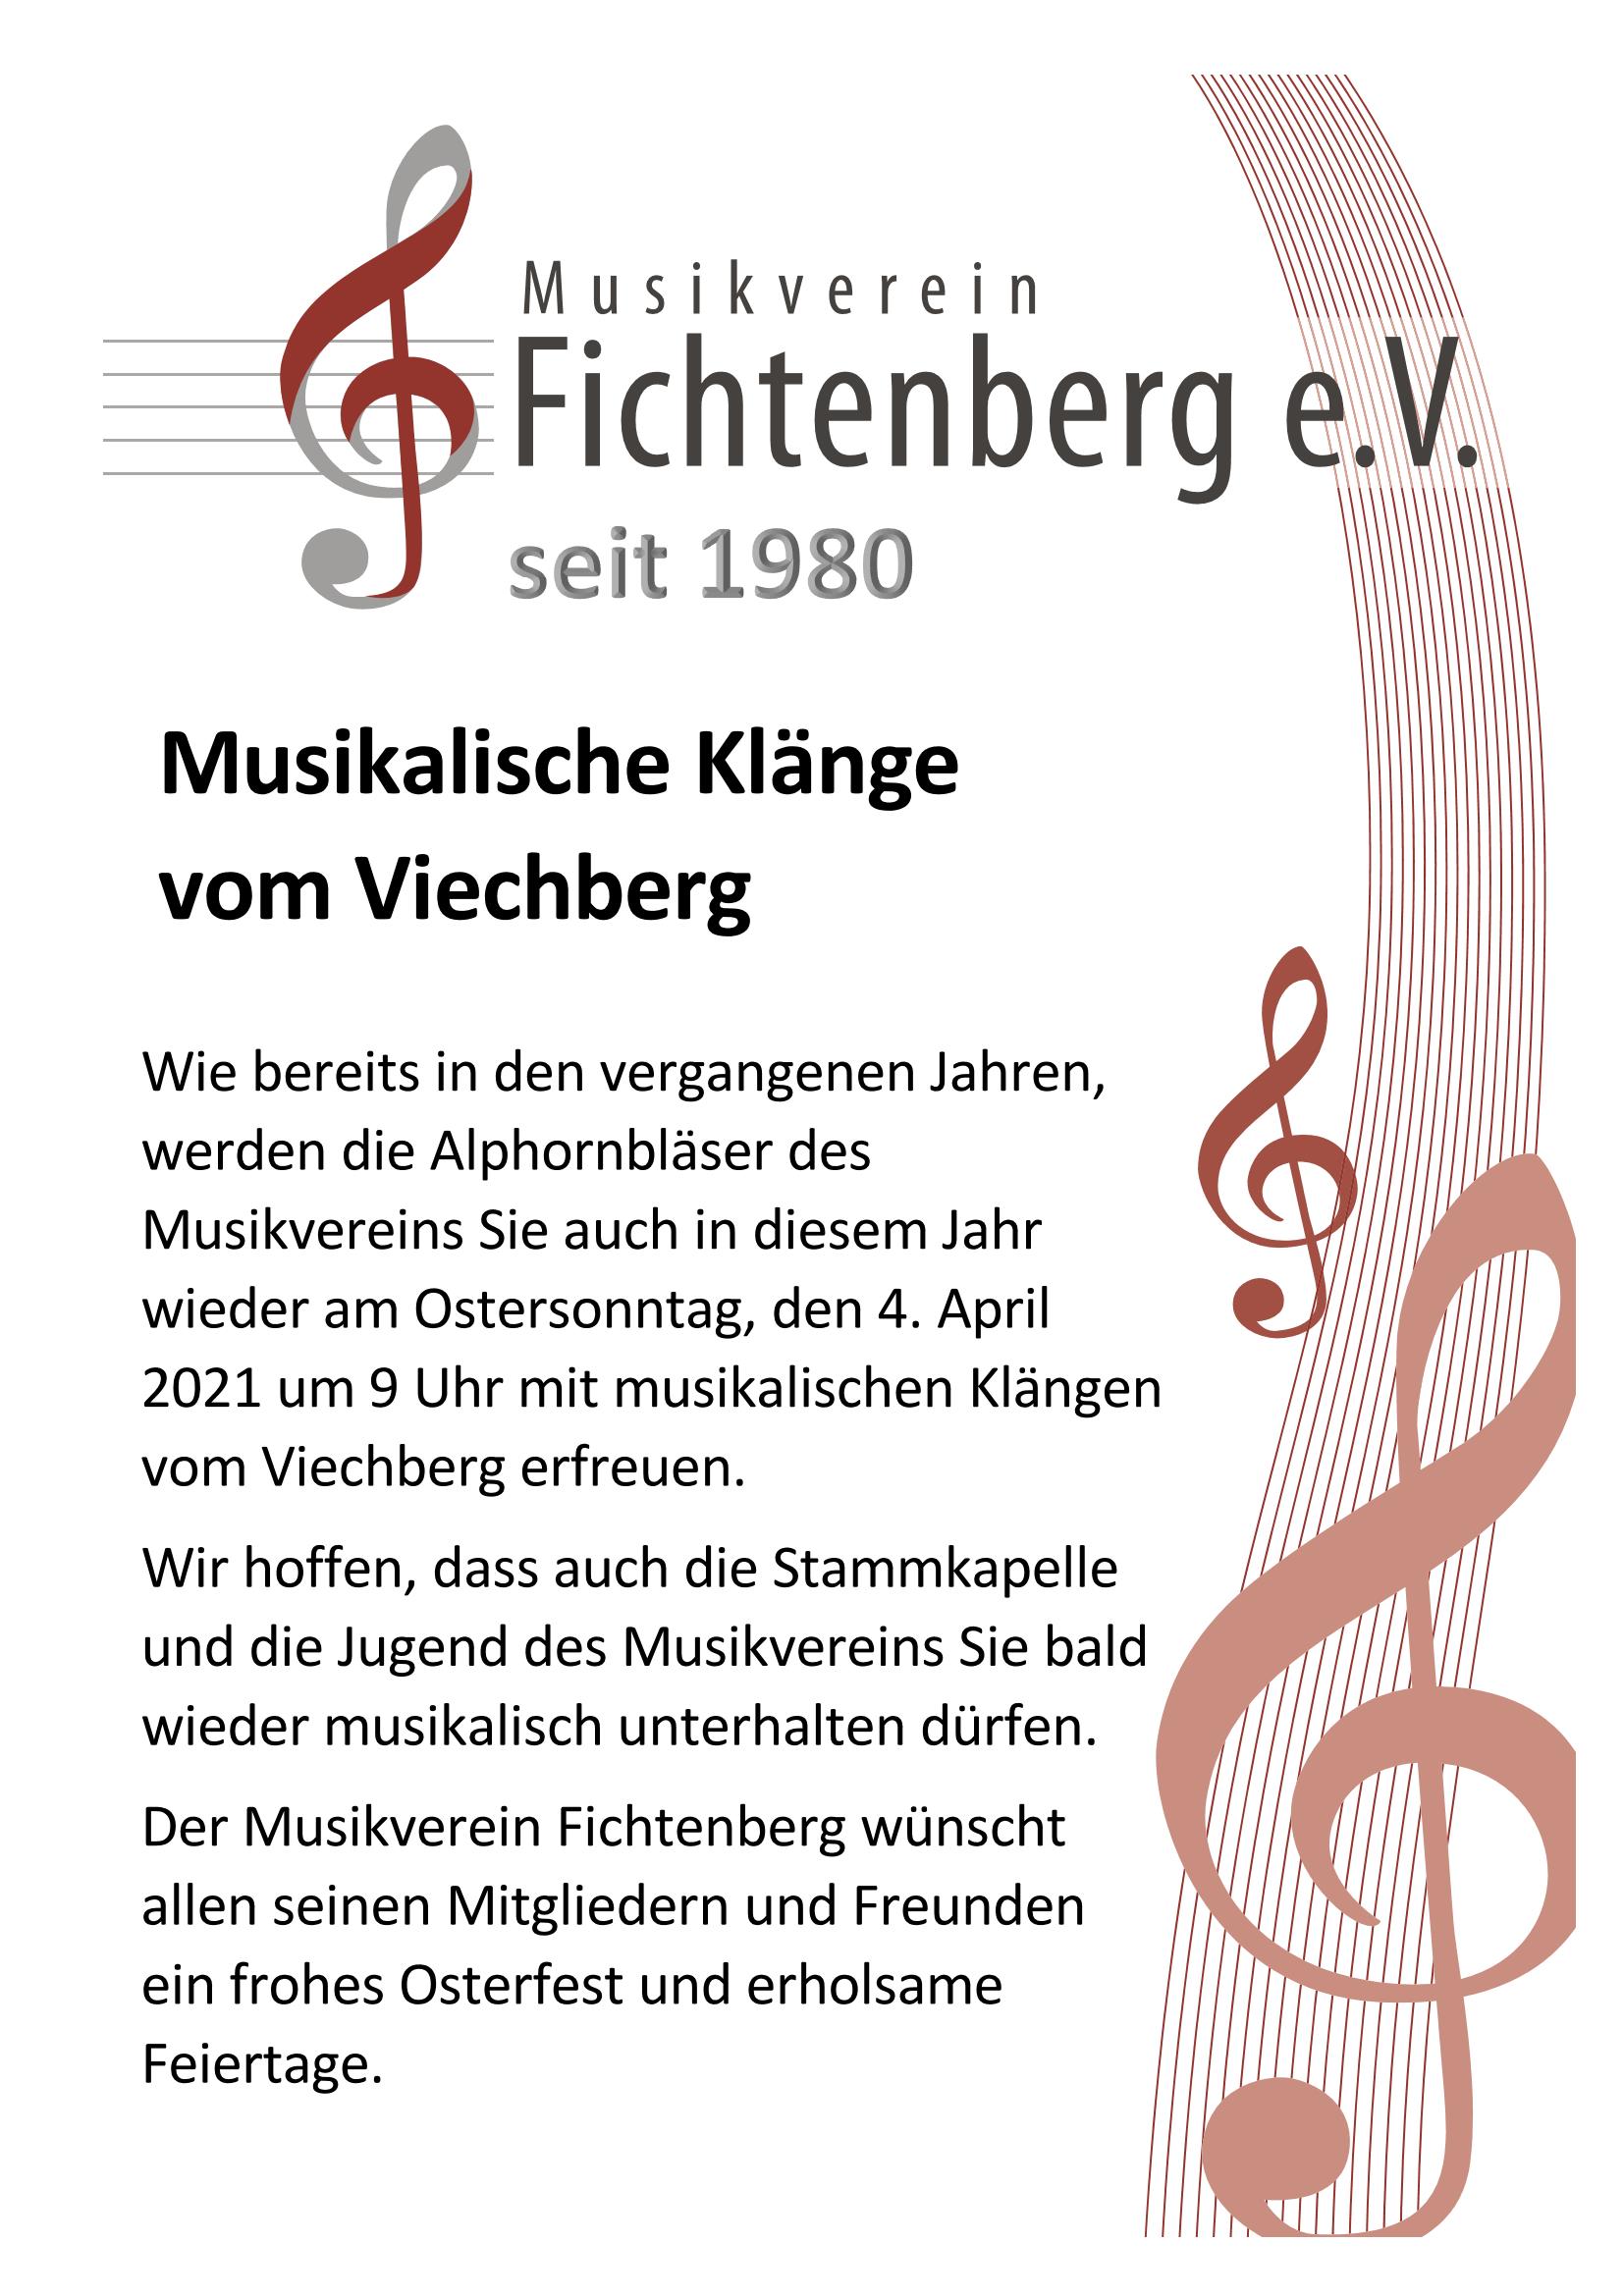 Musikalische Klänge zu Ostern vom Viechberg